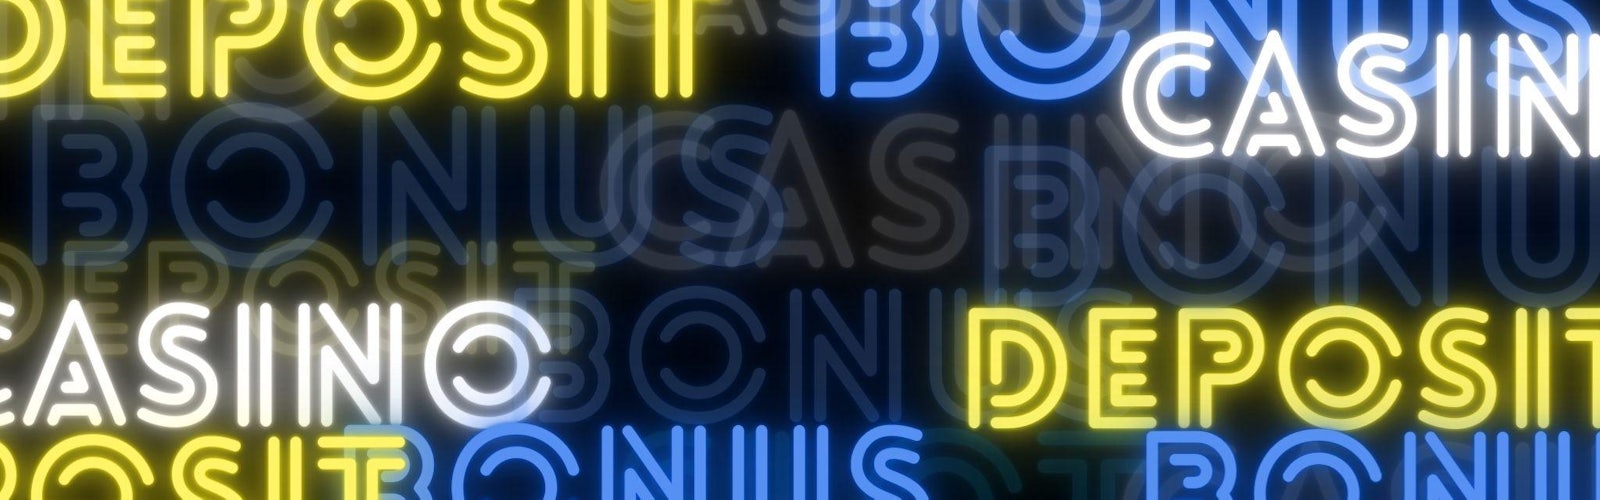 黒の背景に青と黄色と白のネオン系のフォントで、「deposit、bonus、casino」とバラバラに書かれている様子